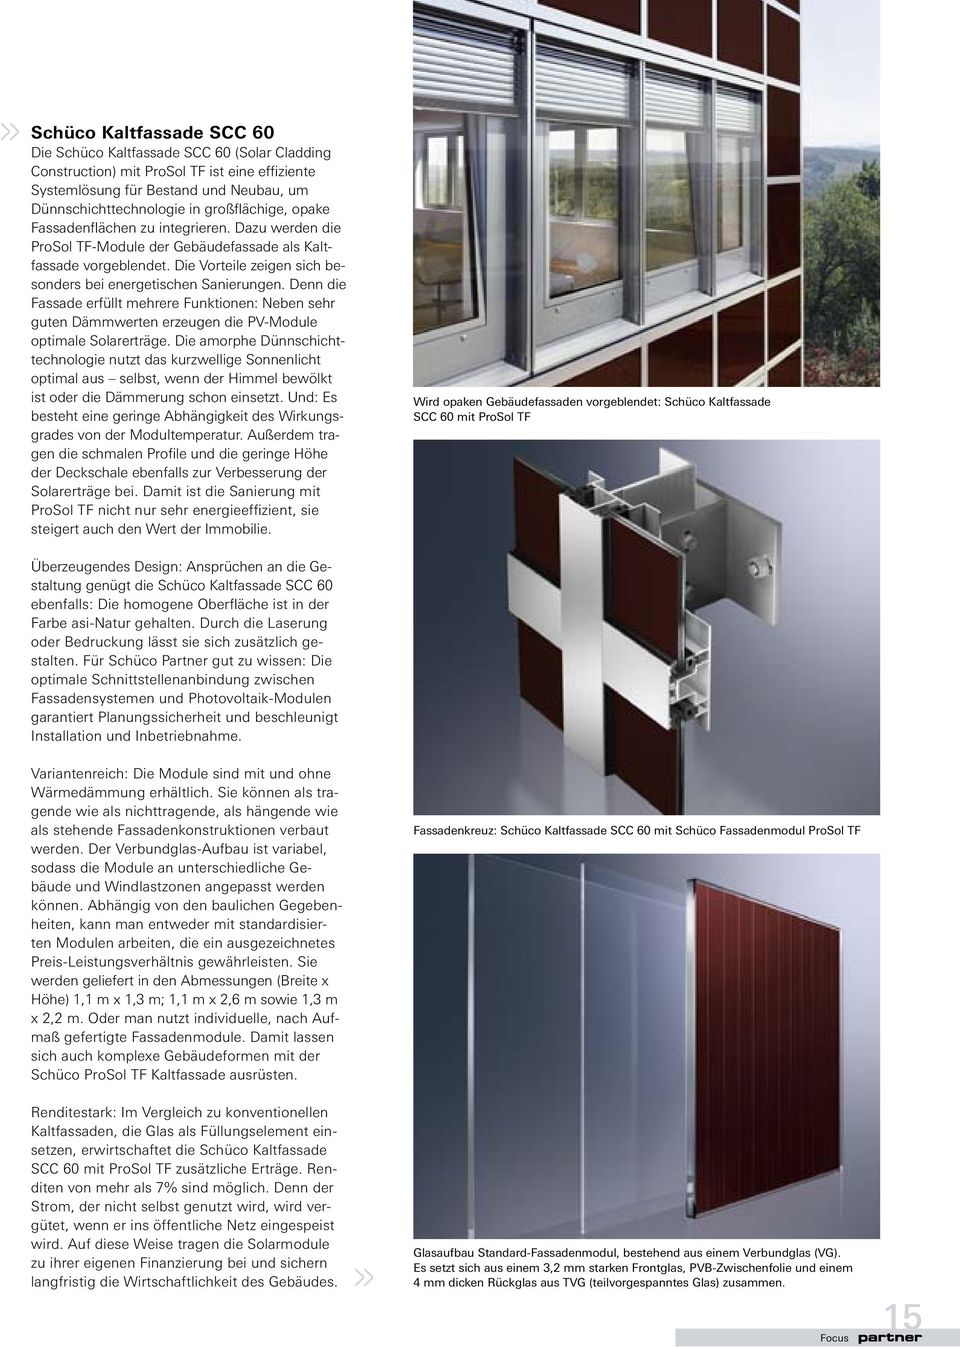 Denn die Fassade erfüllt mehrere Funktionen: Neben sehr guten Dämmwerten erzeugen die PV-Module optimale Solarerträge.